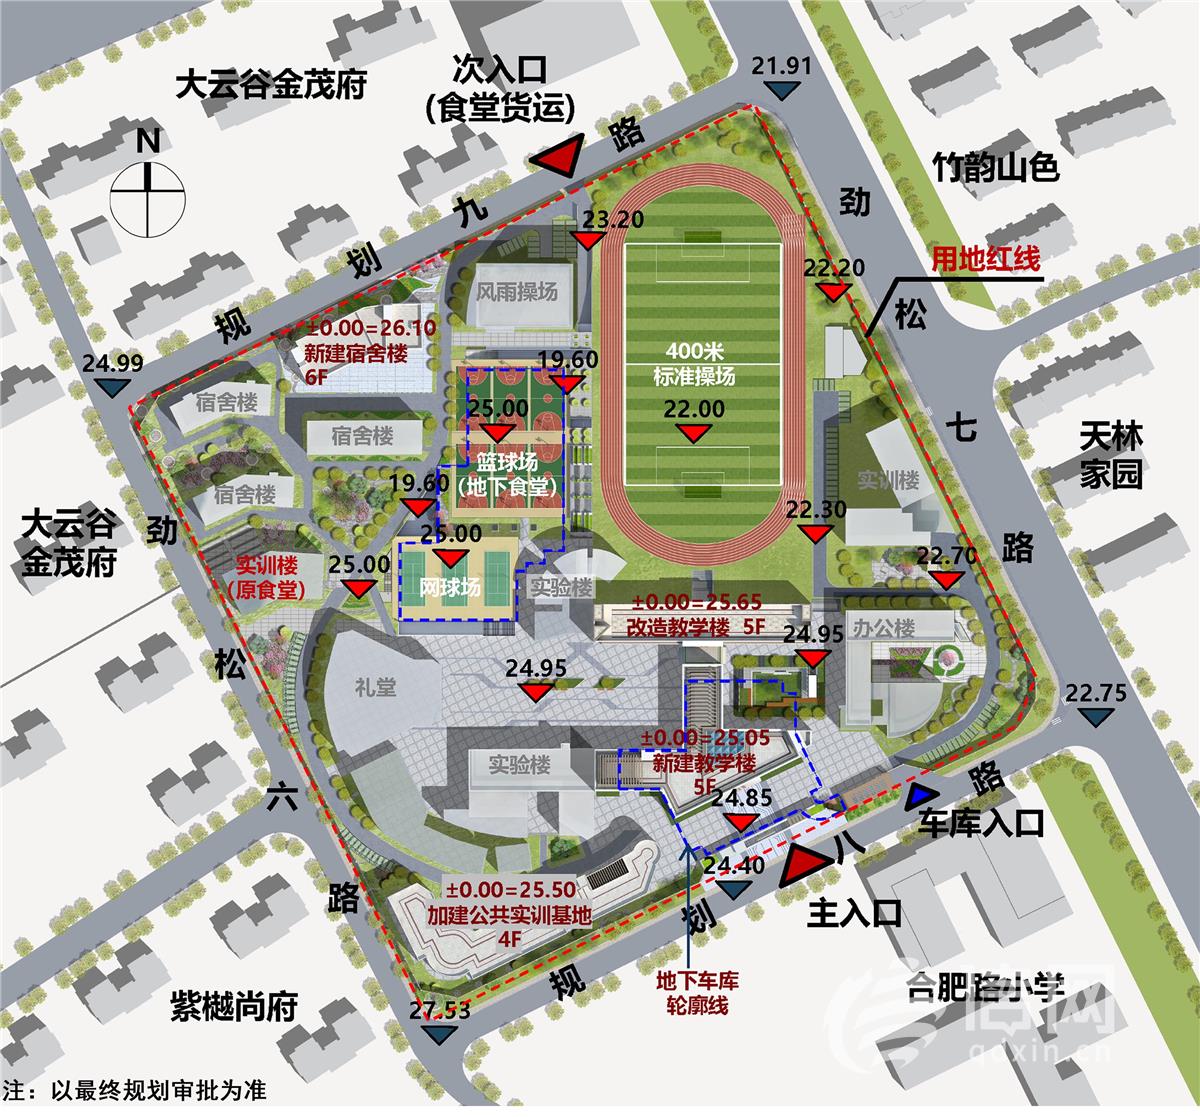 青岛高新职业学校拟内部扩建 规划停车位216个